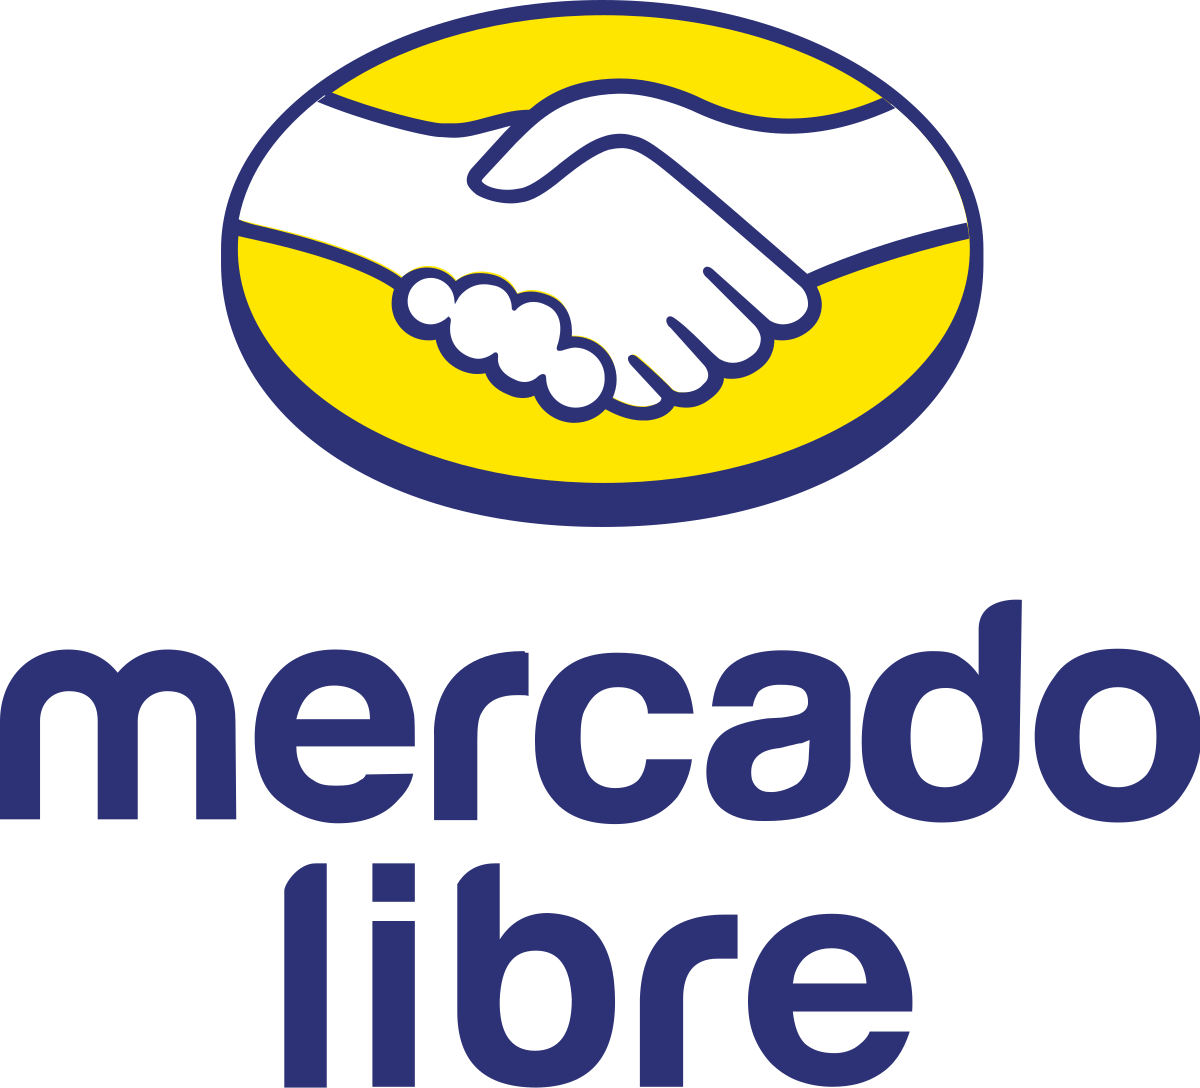 Mercado Libre - Wikipedia